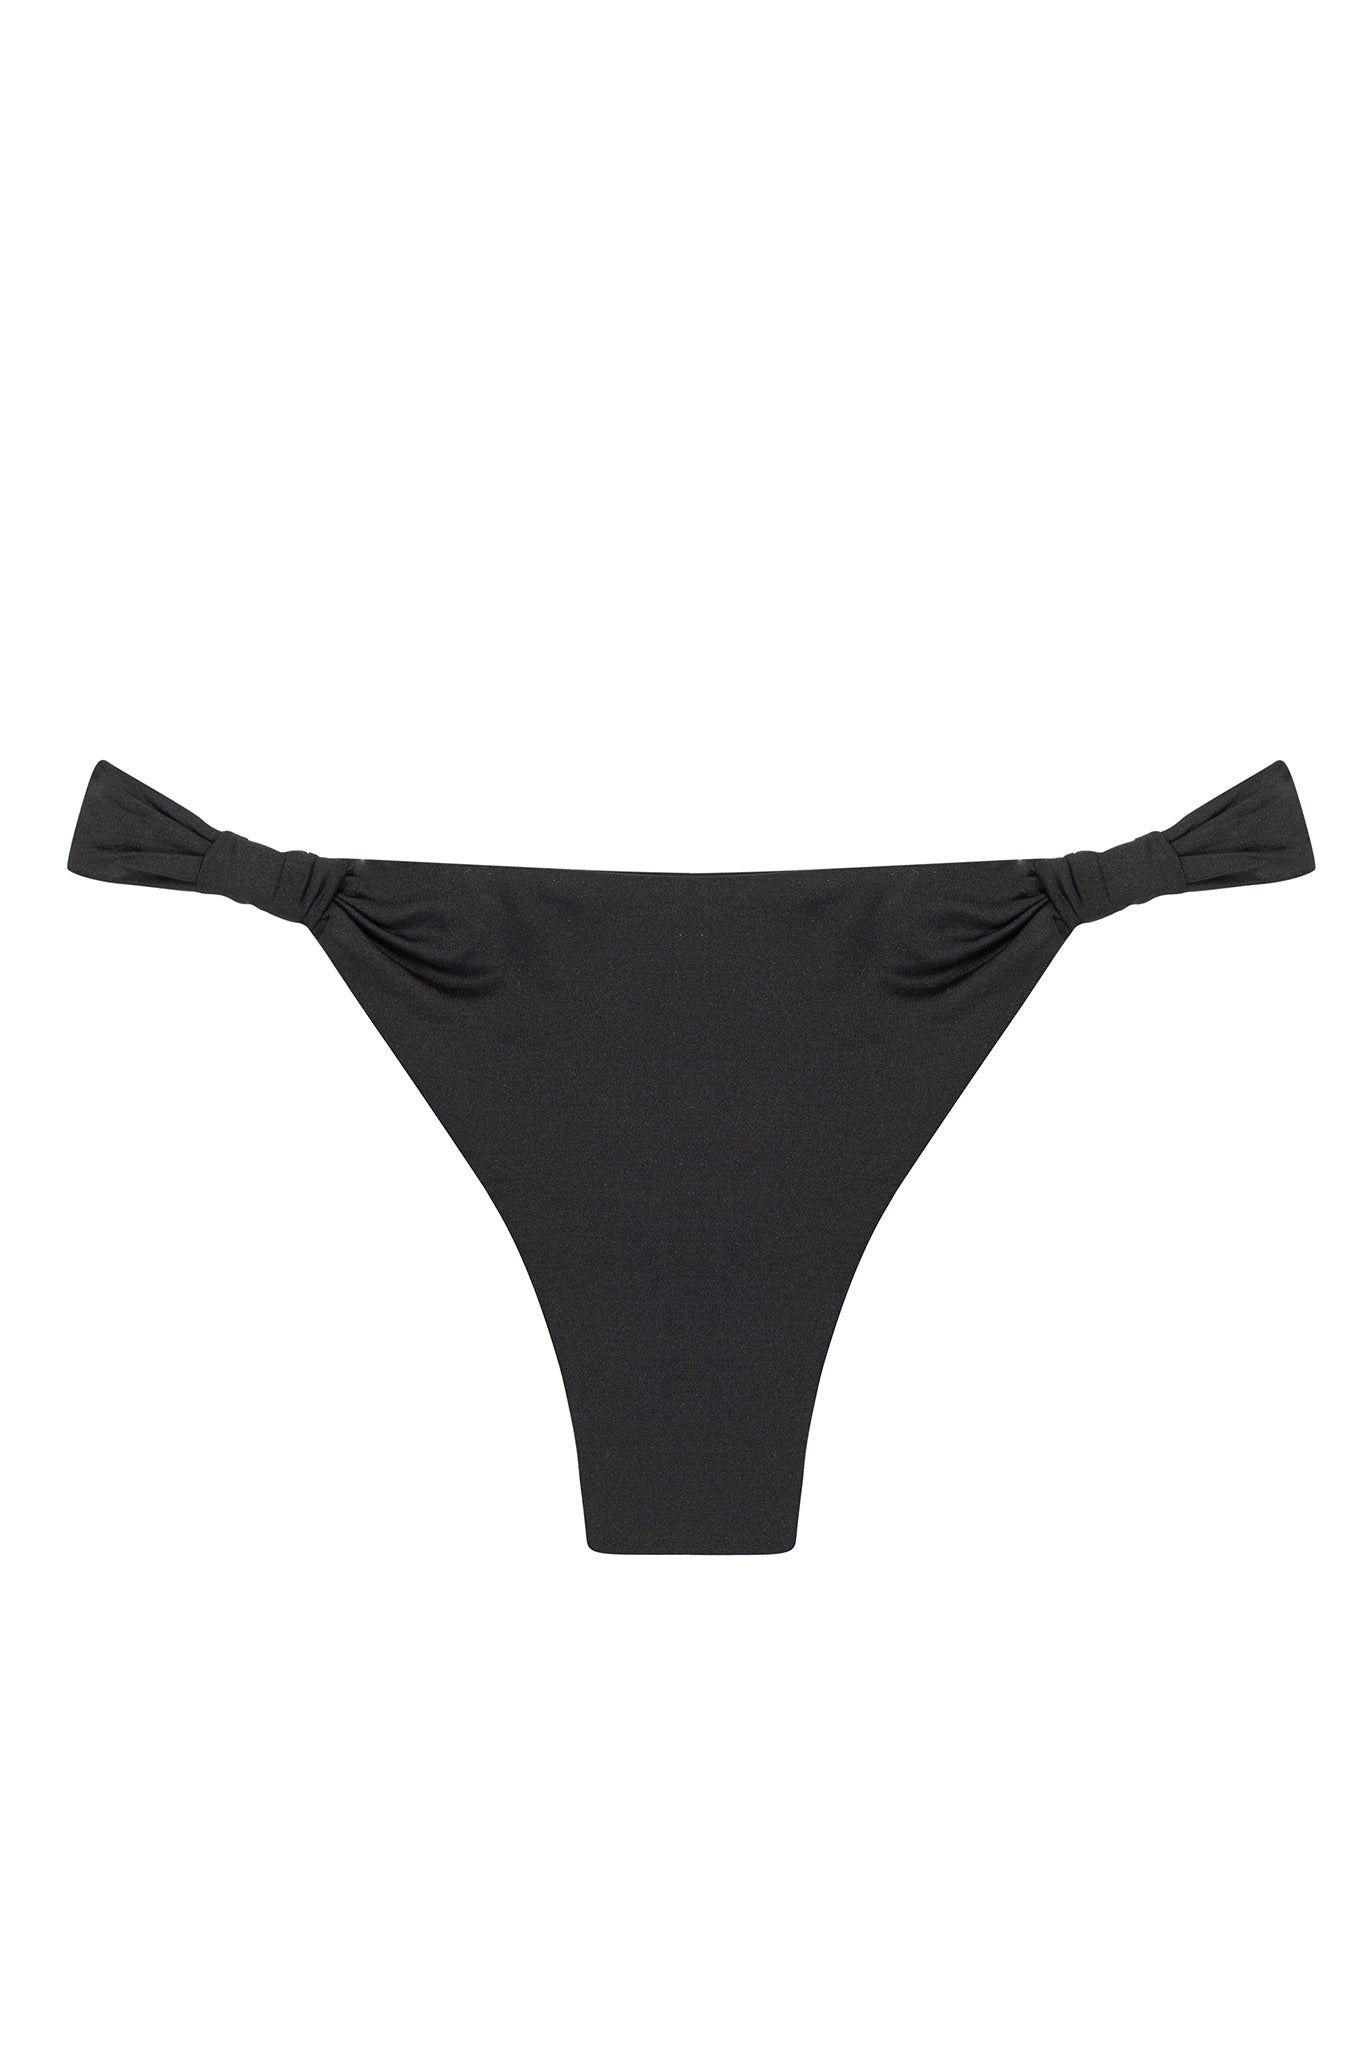 Tulum Bottom - Black – Monday Swimwear